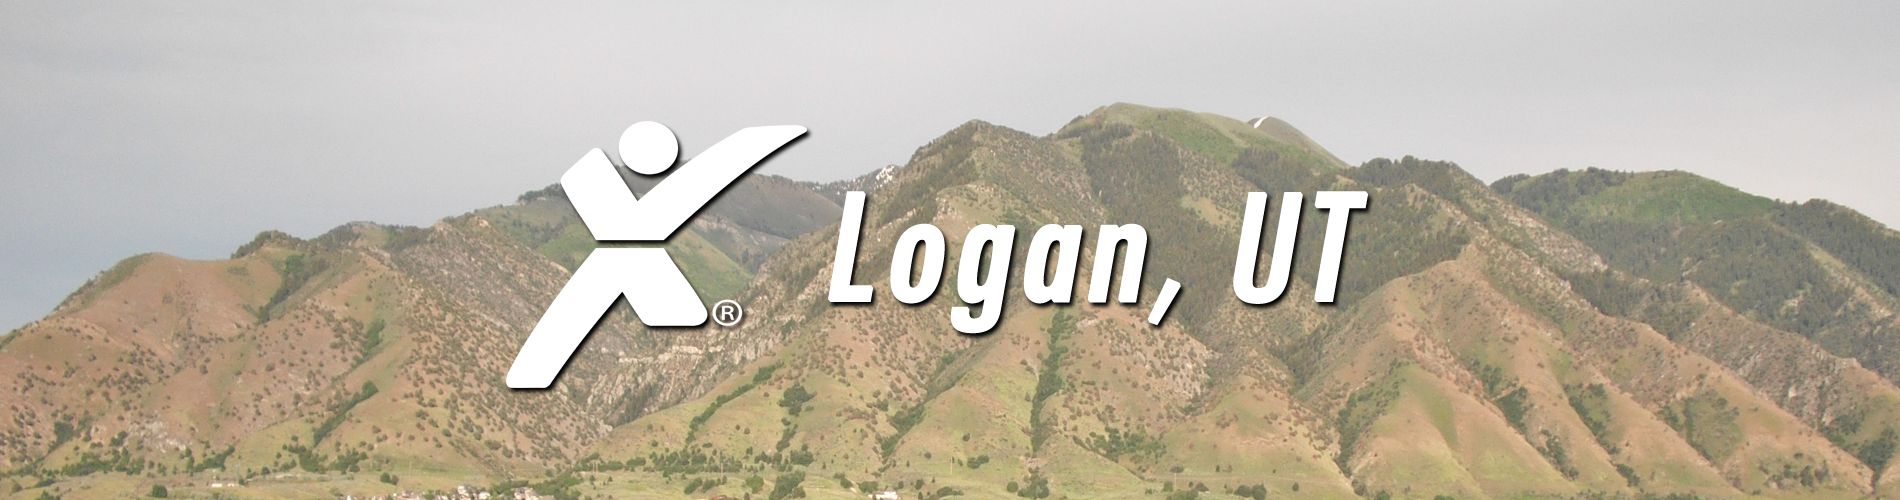 Logan Express